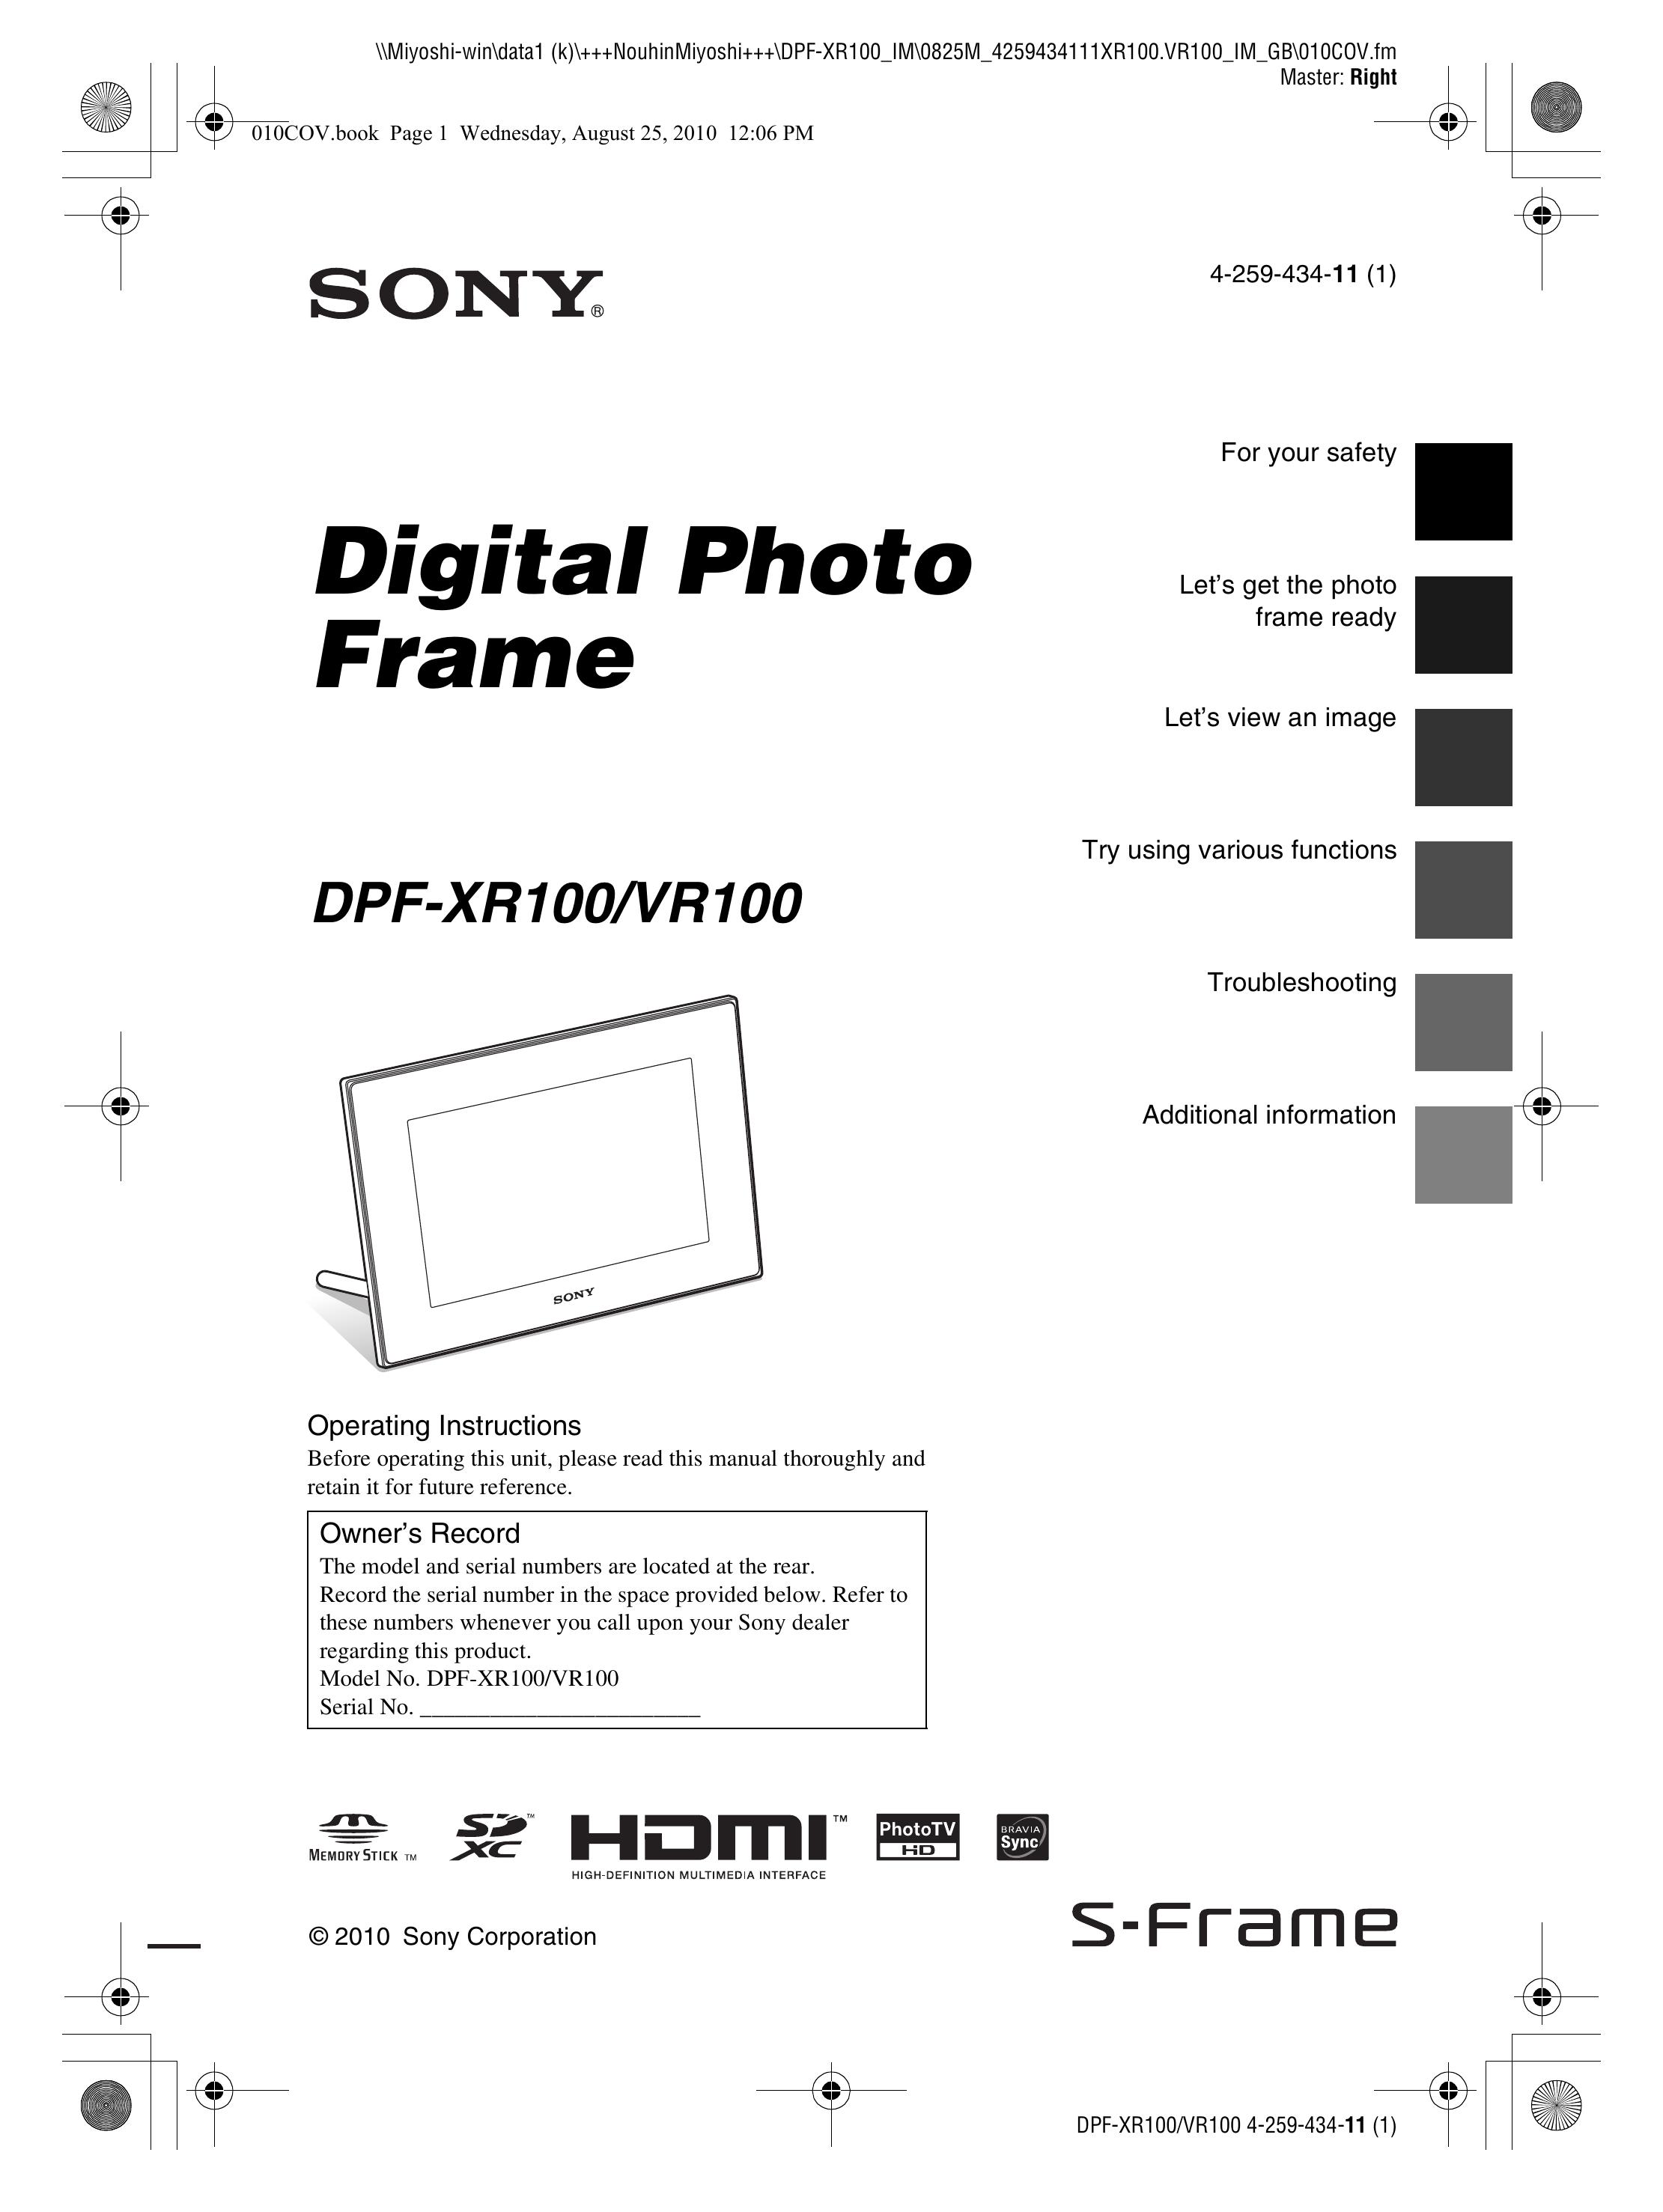 Sony DPF-XR100 Digital Photo Frame User Manual